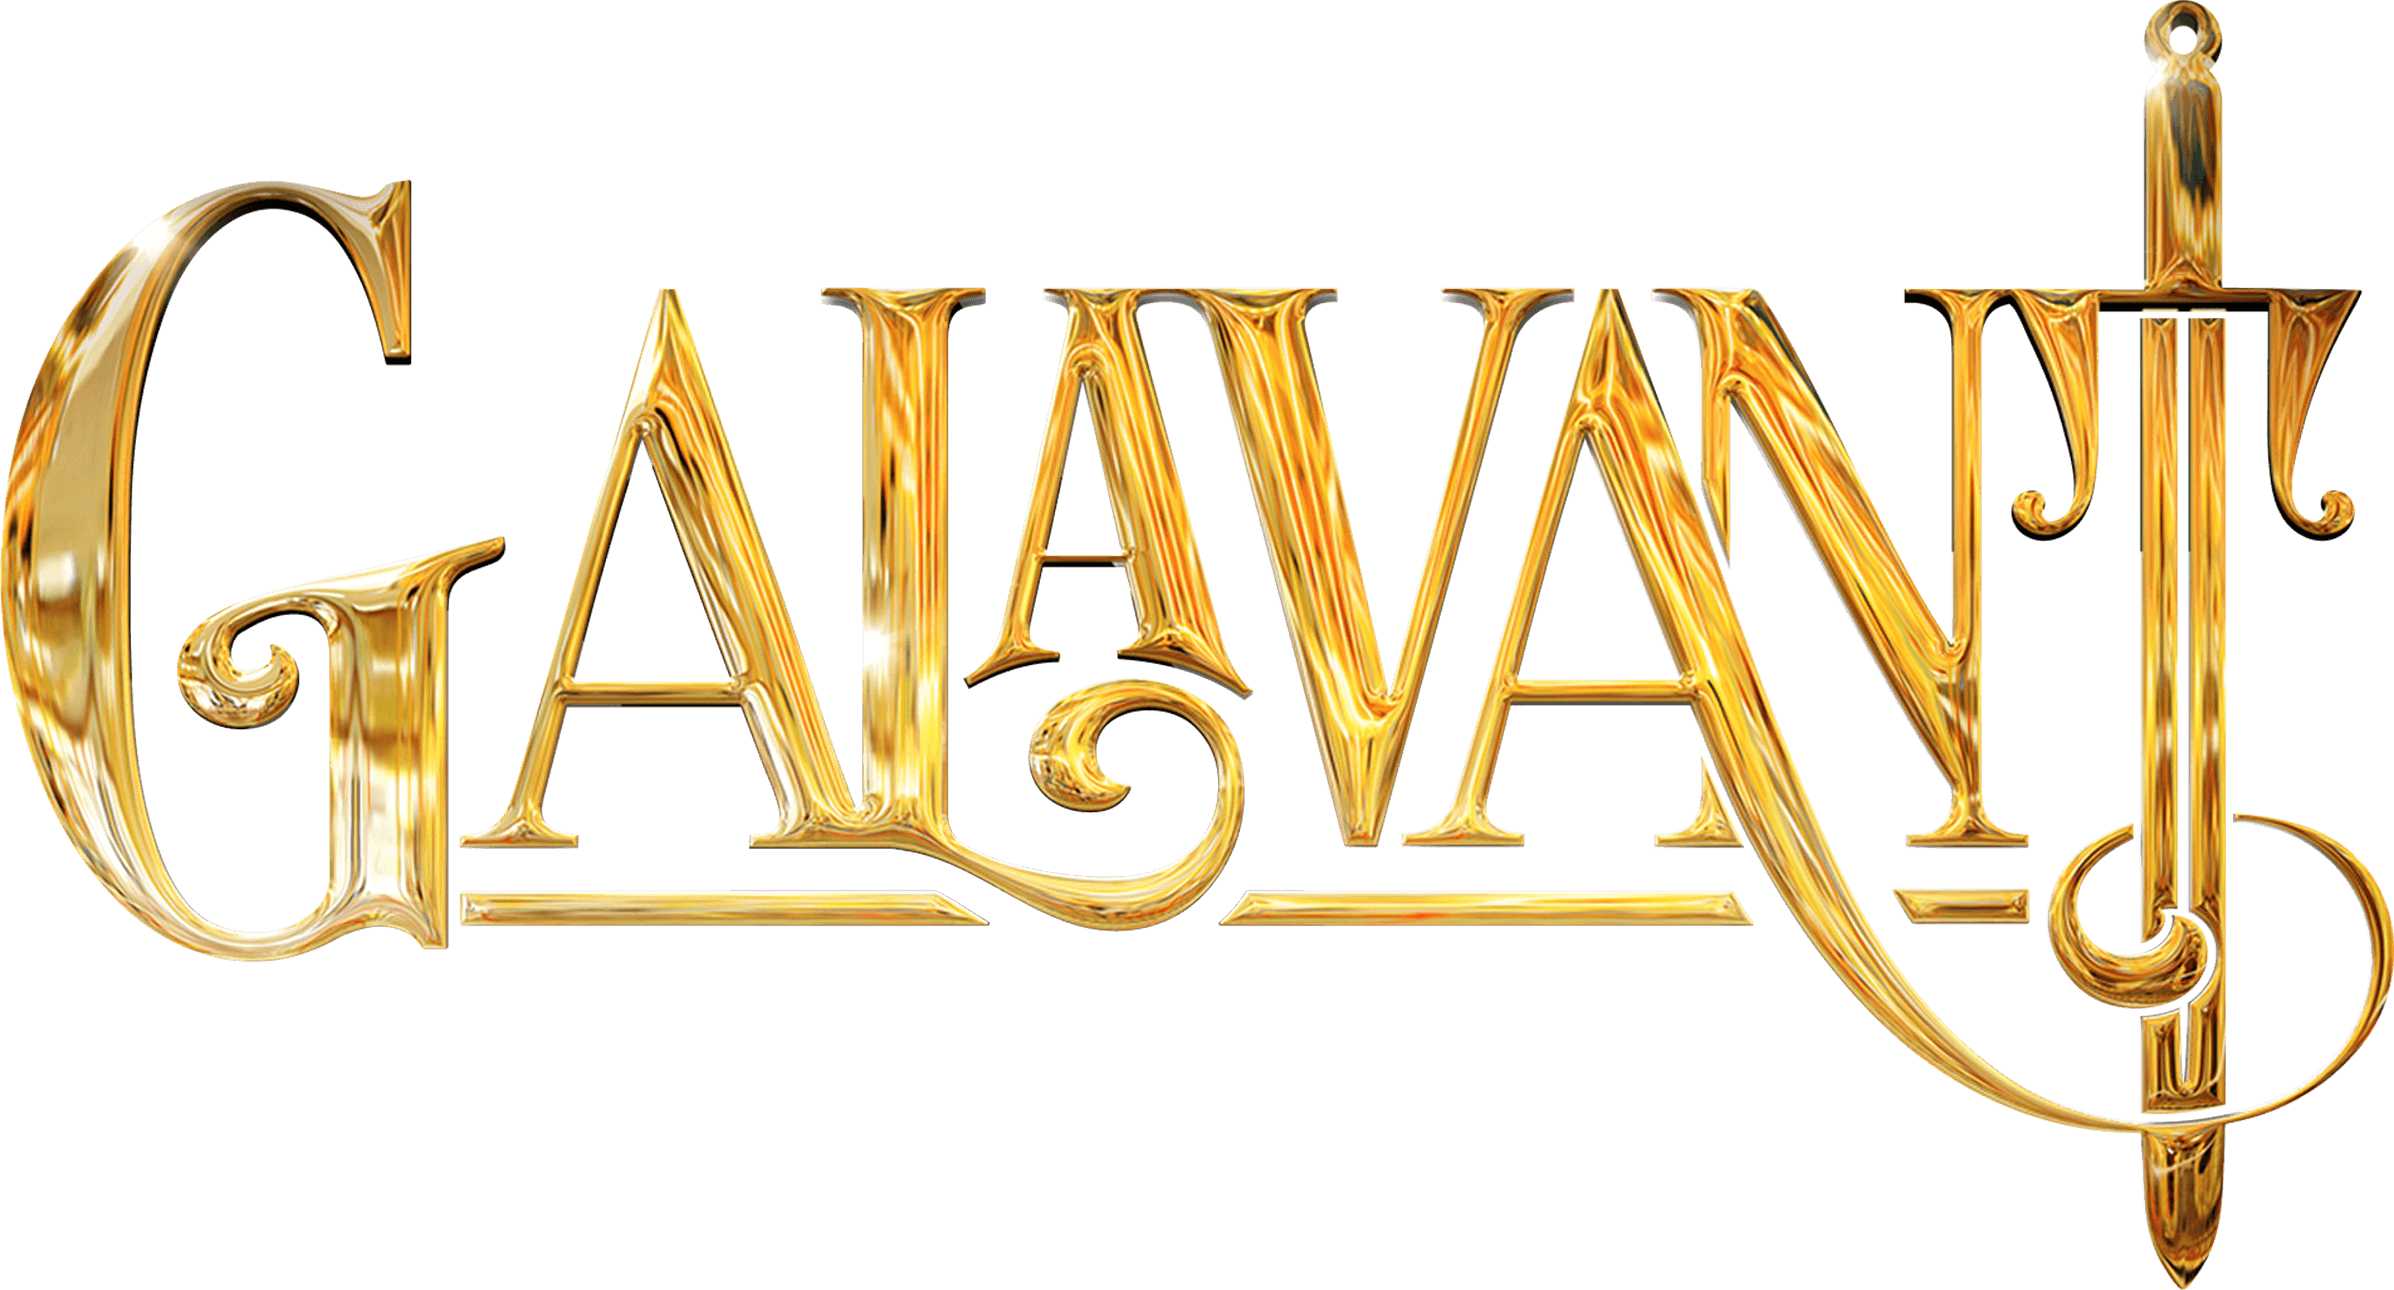 Galavant logo